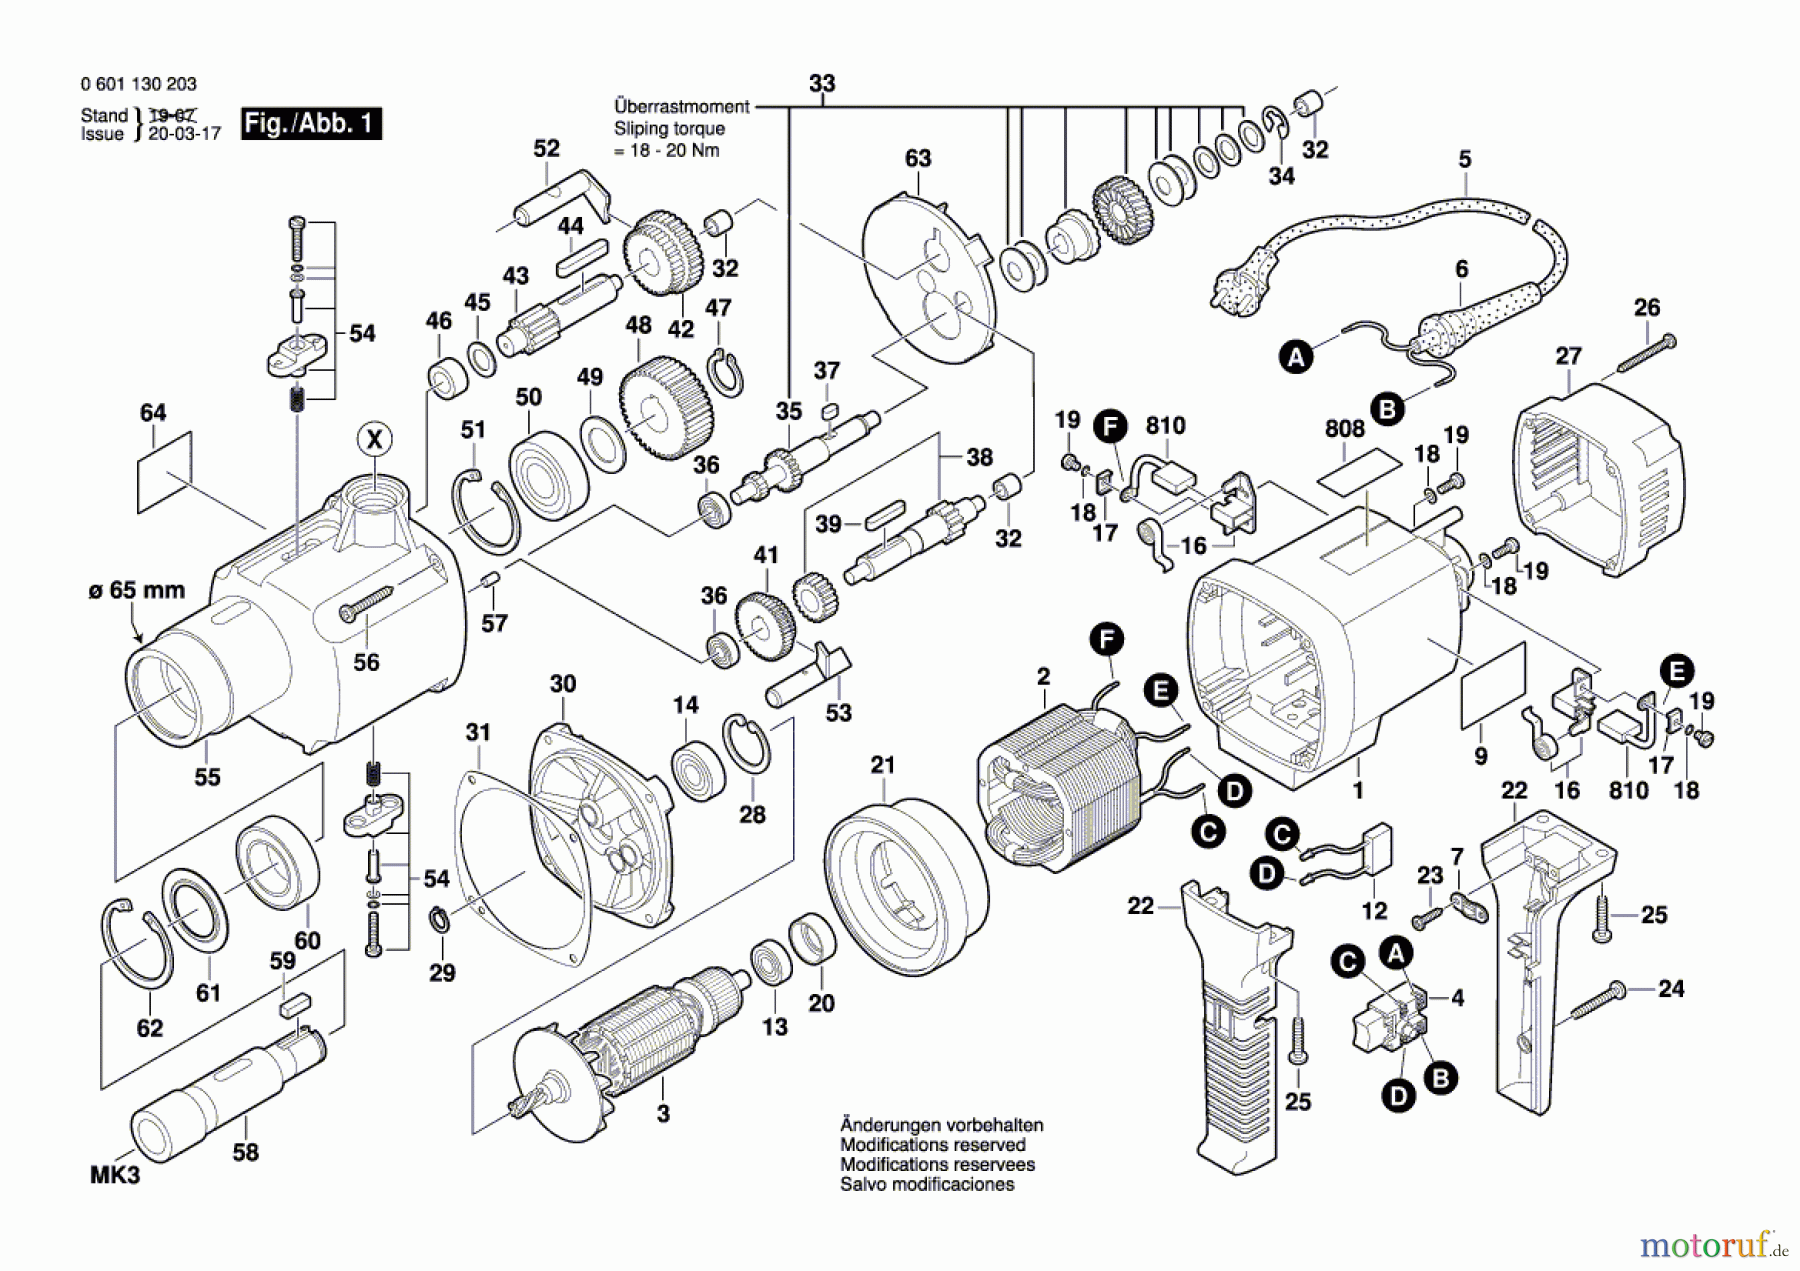  Bosch Werkzeug Bohrmaschine GBM 32-4 Seite 1